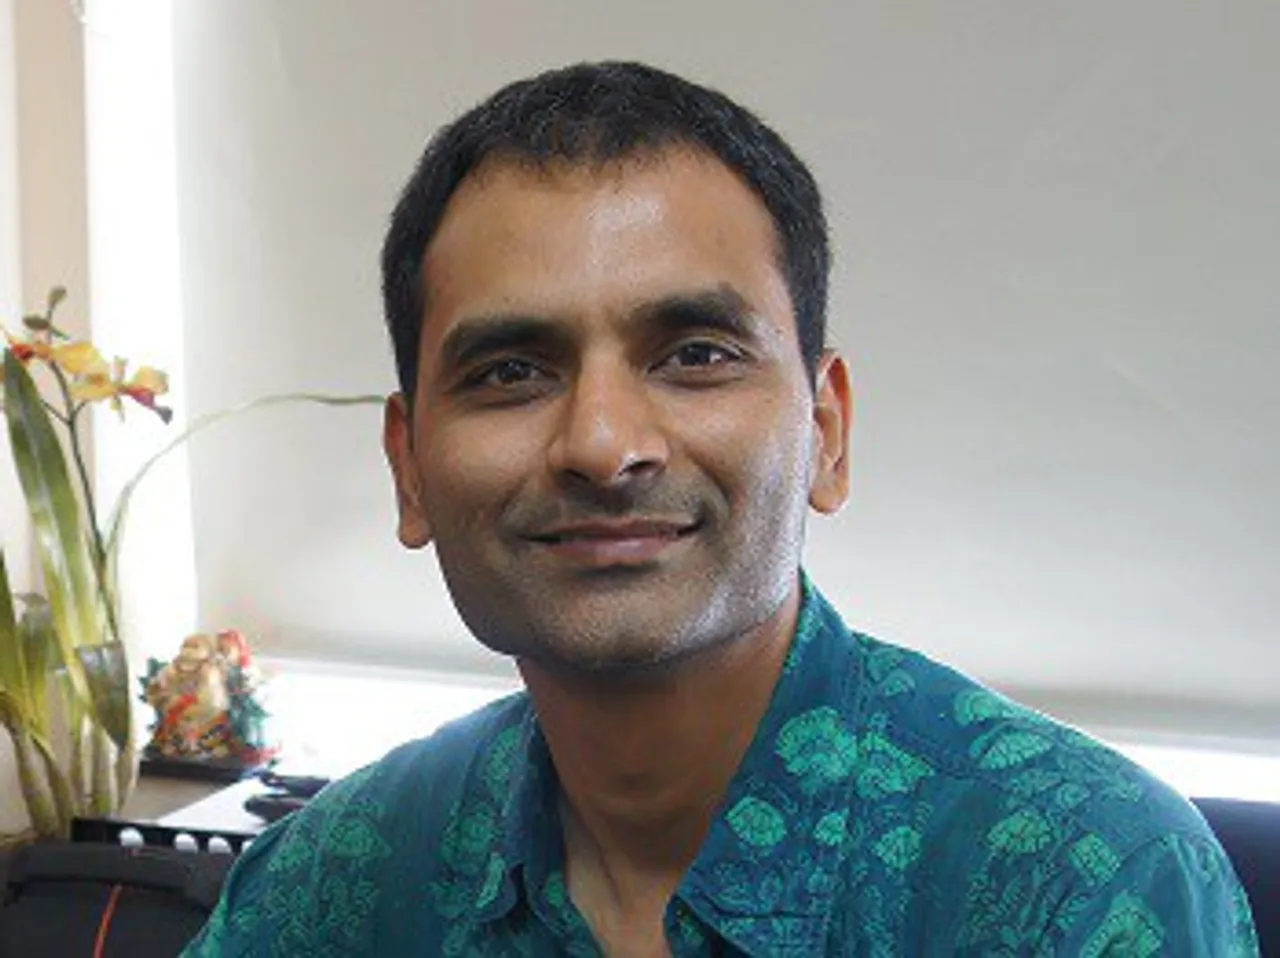 Nishant Jain